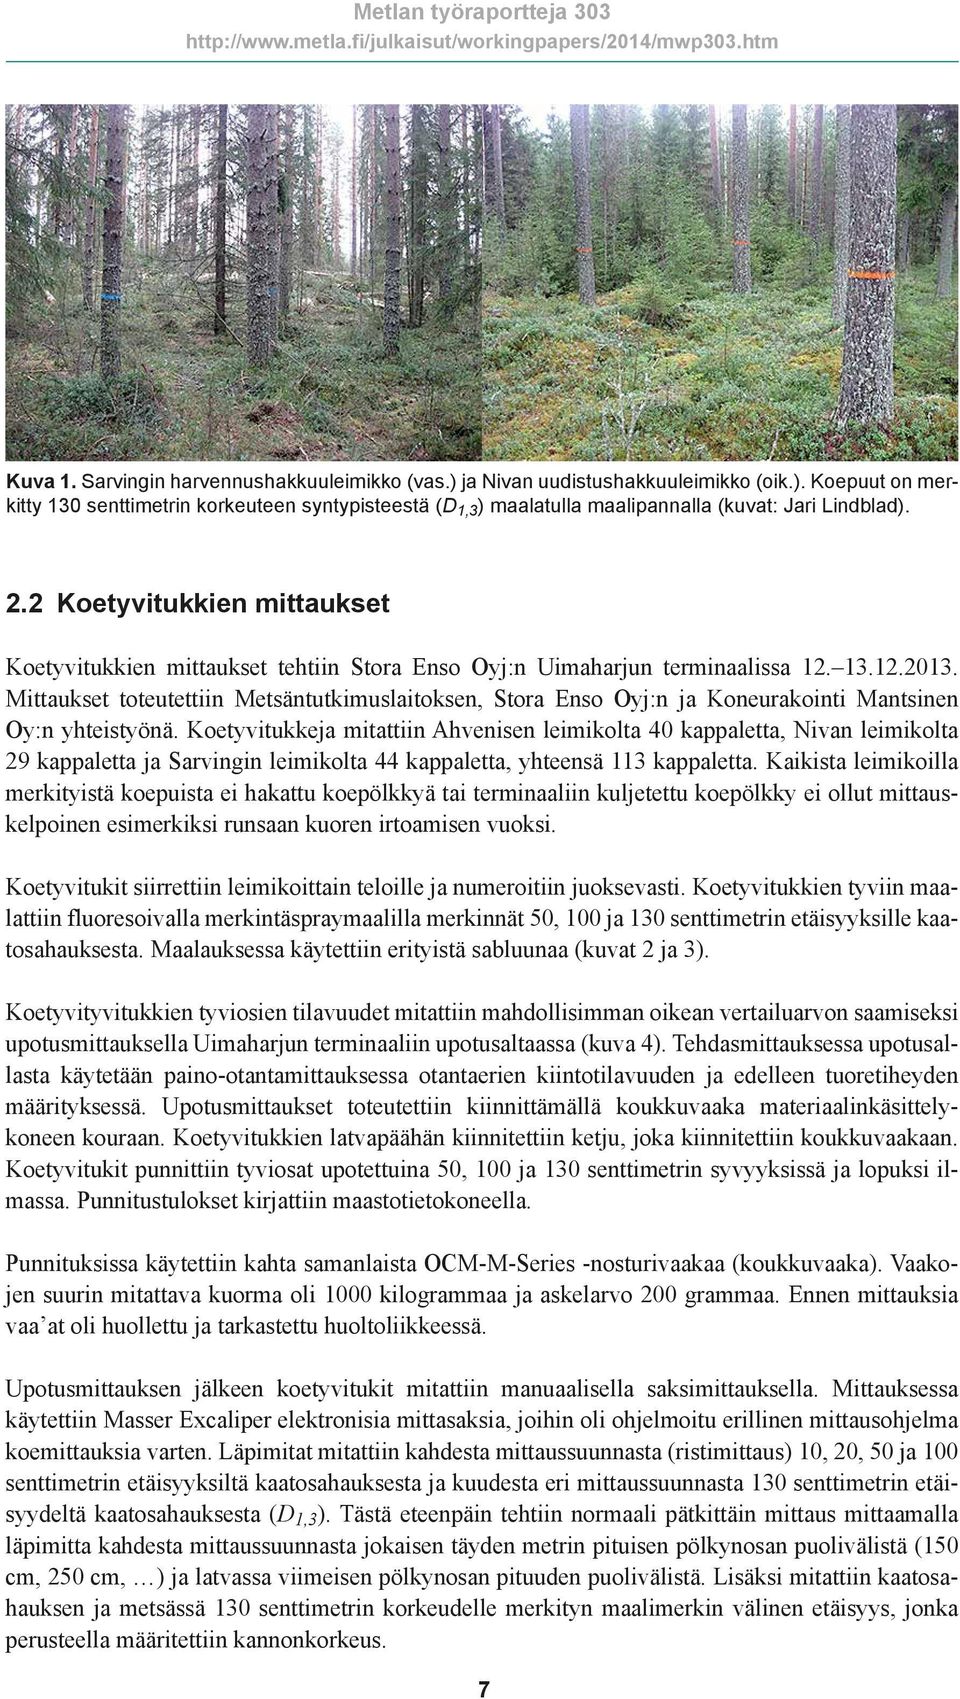 Mittaukset toteutettiin Metsäntutkimuslaitoksen, Stora Enso Oyj:n ja Koneurakointi Mantsinen Oy:n yhteistyönä.